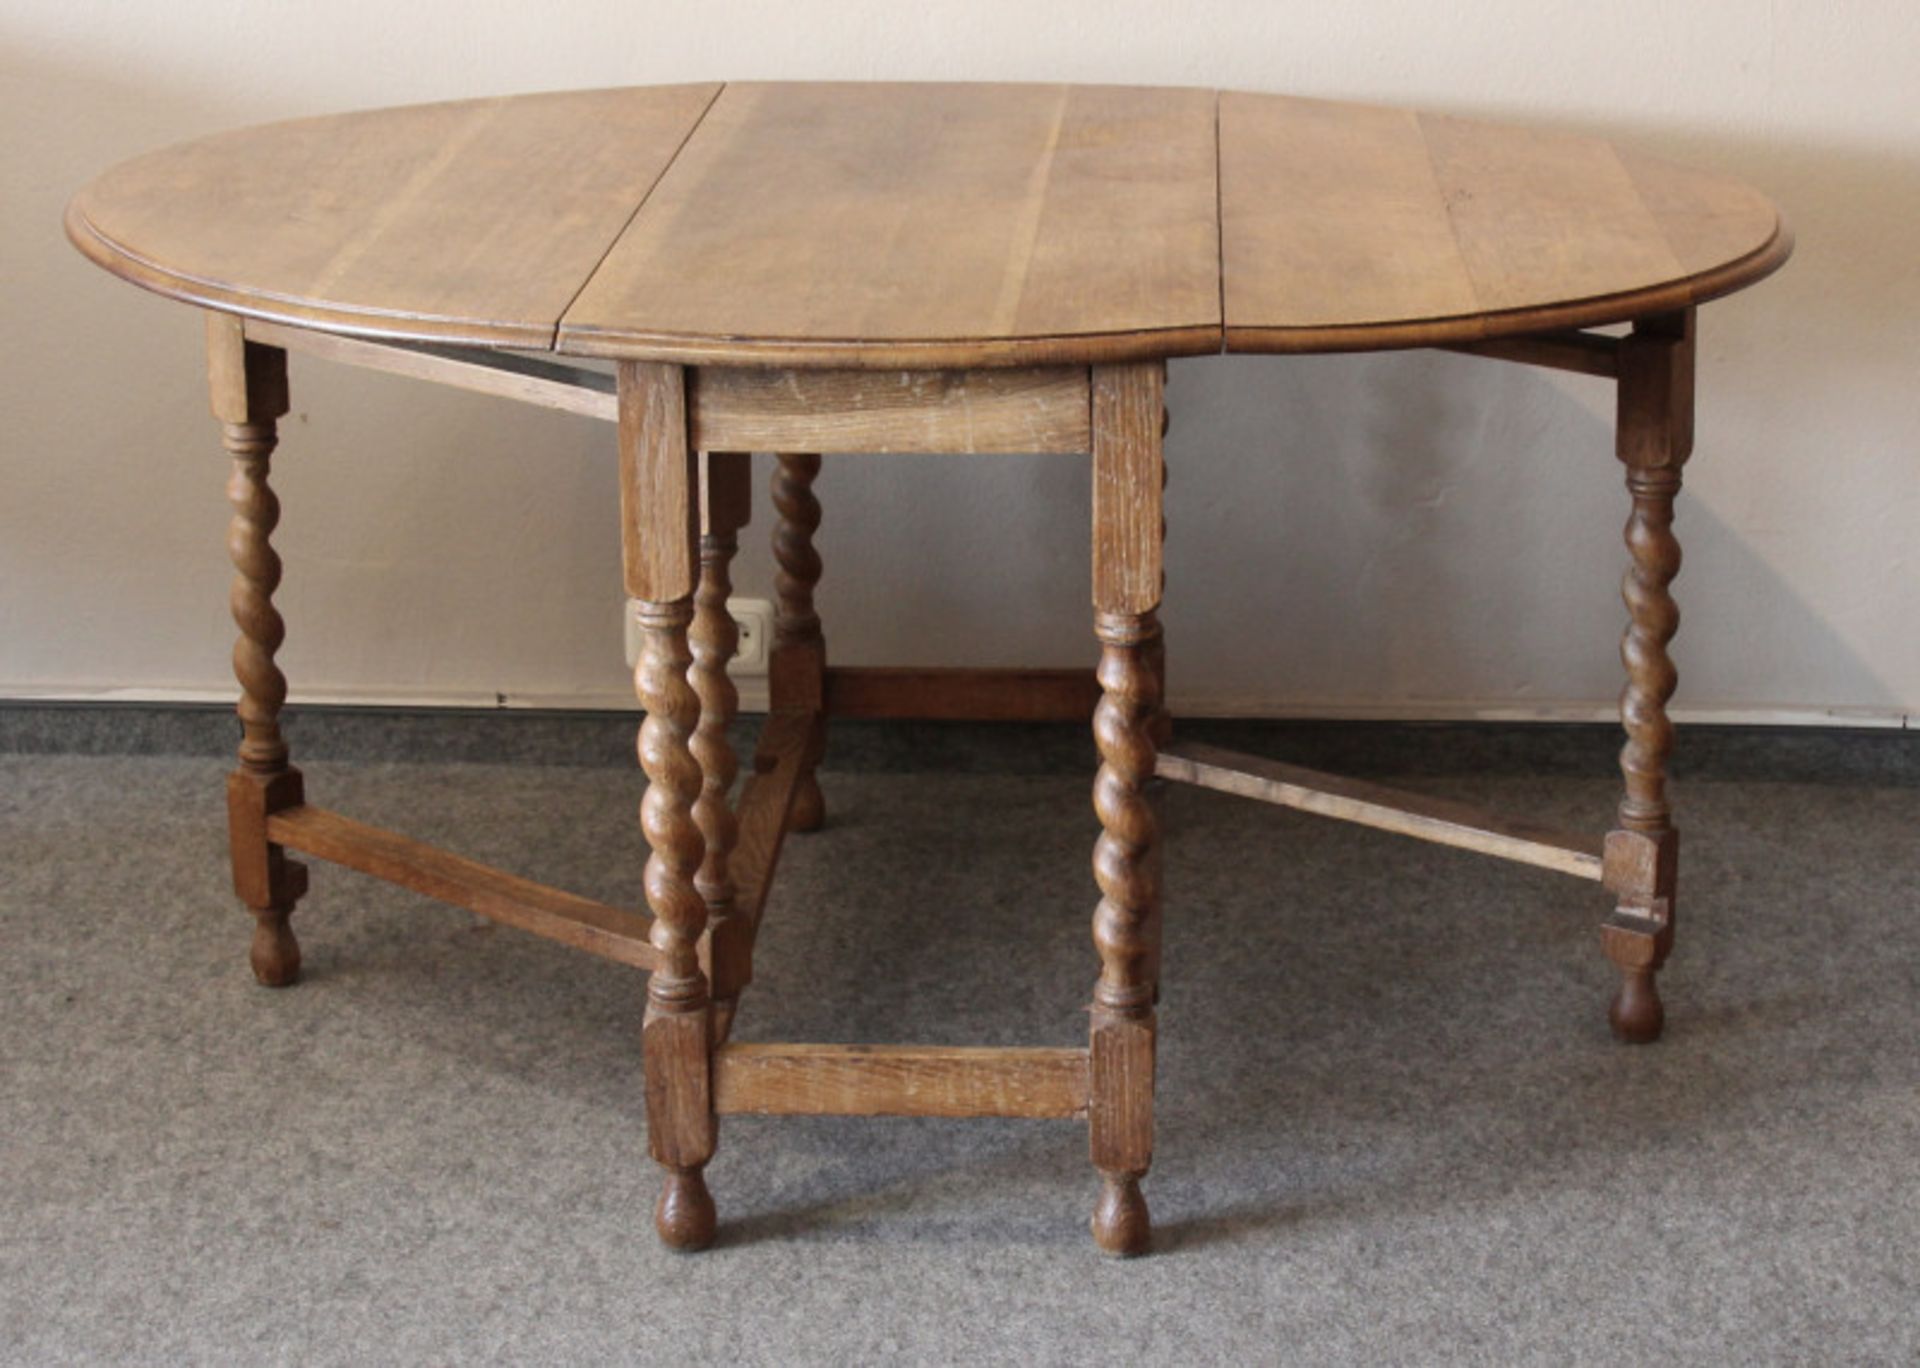 Englischer Gateleg Table, Eiche/hell, um 1910beidseitig abklappbar, originaler Zustand,